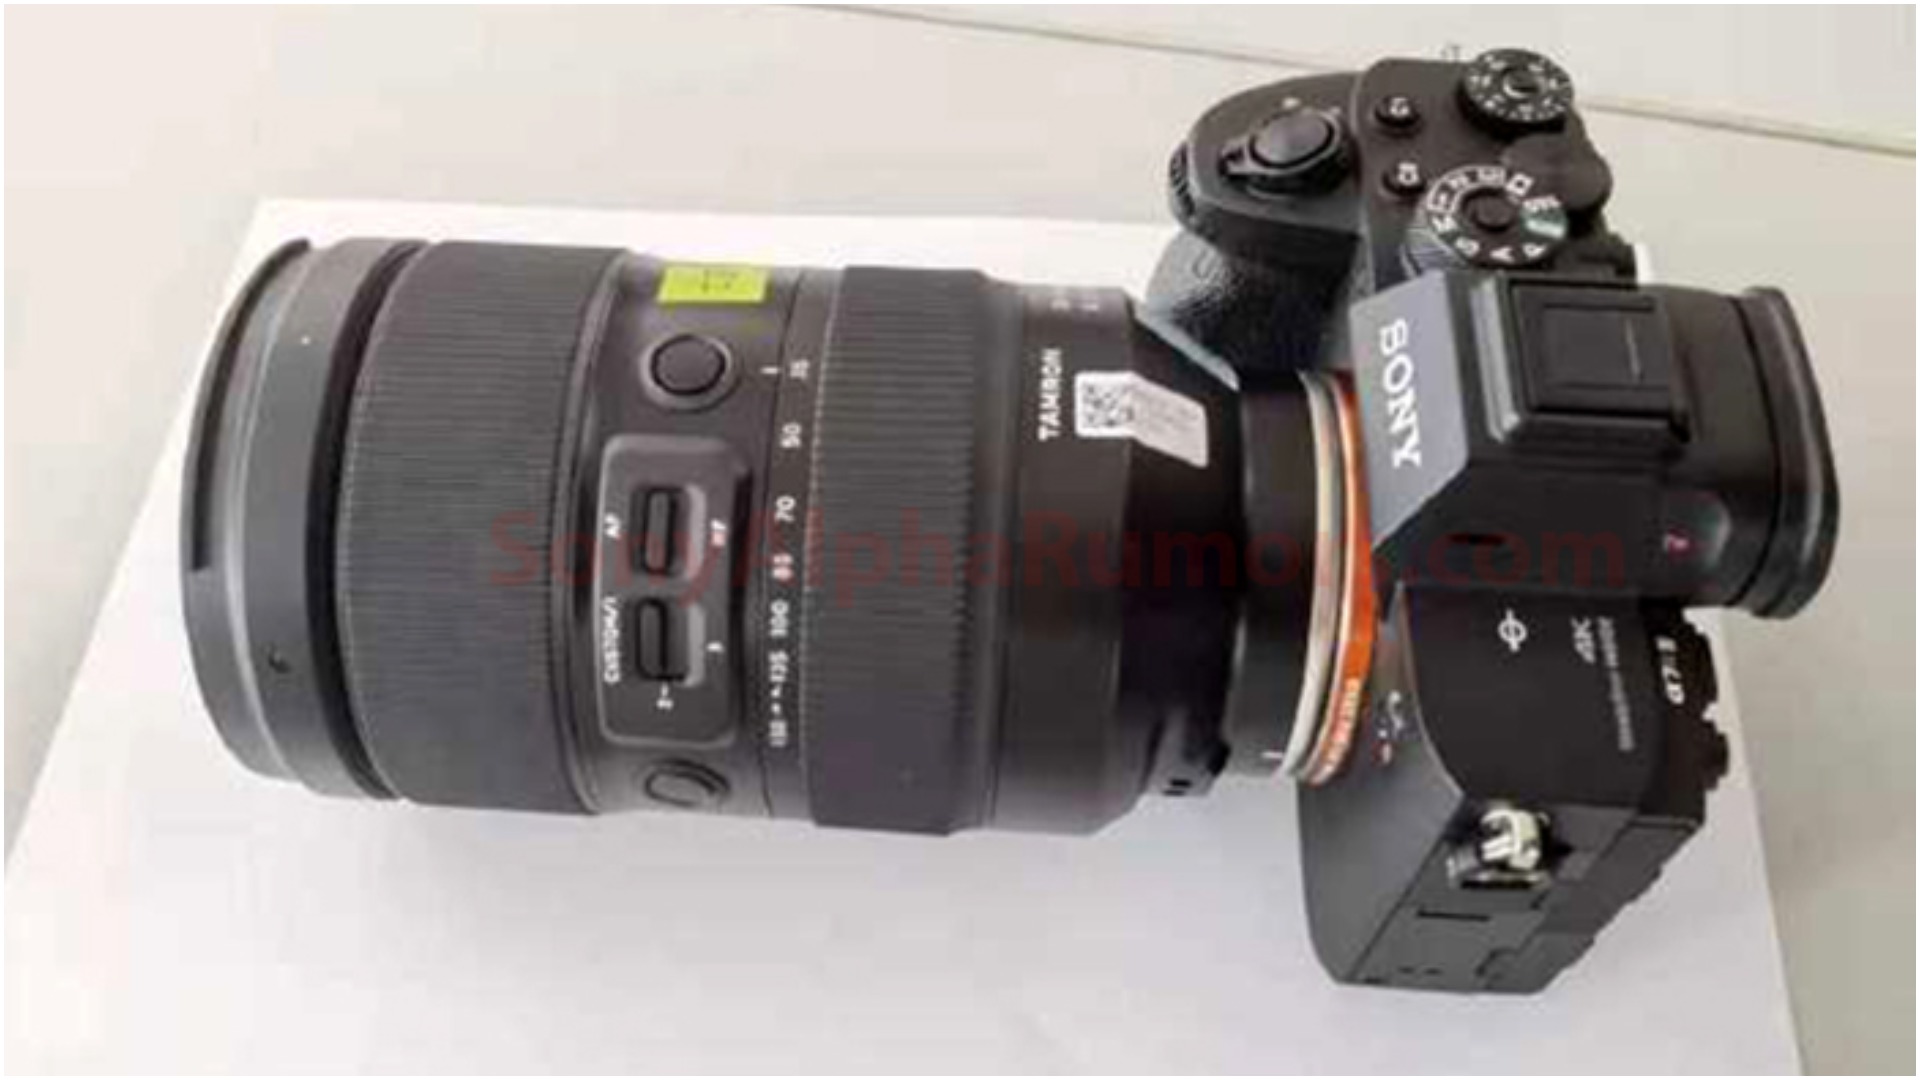 Tiếp tục xuất hiện hình ảnh ống kính Tamron 35-150mm F2.0-2.8 trên máy ảnh Sony